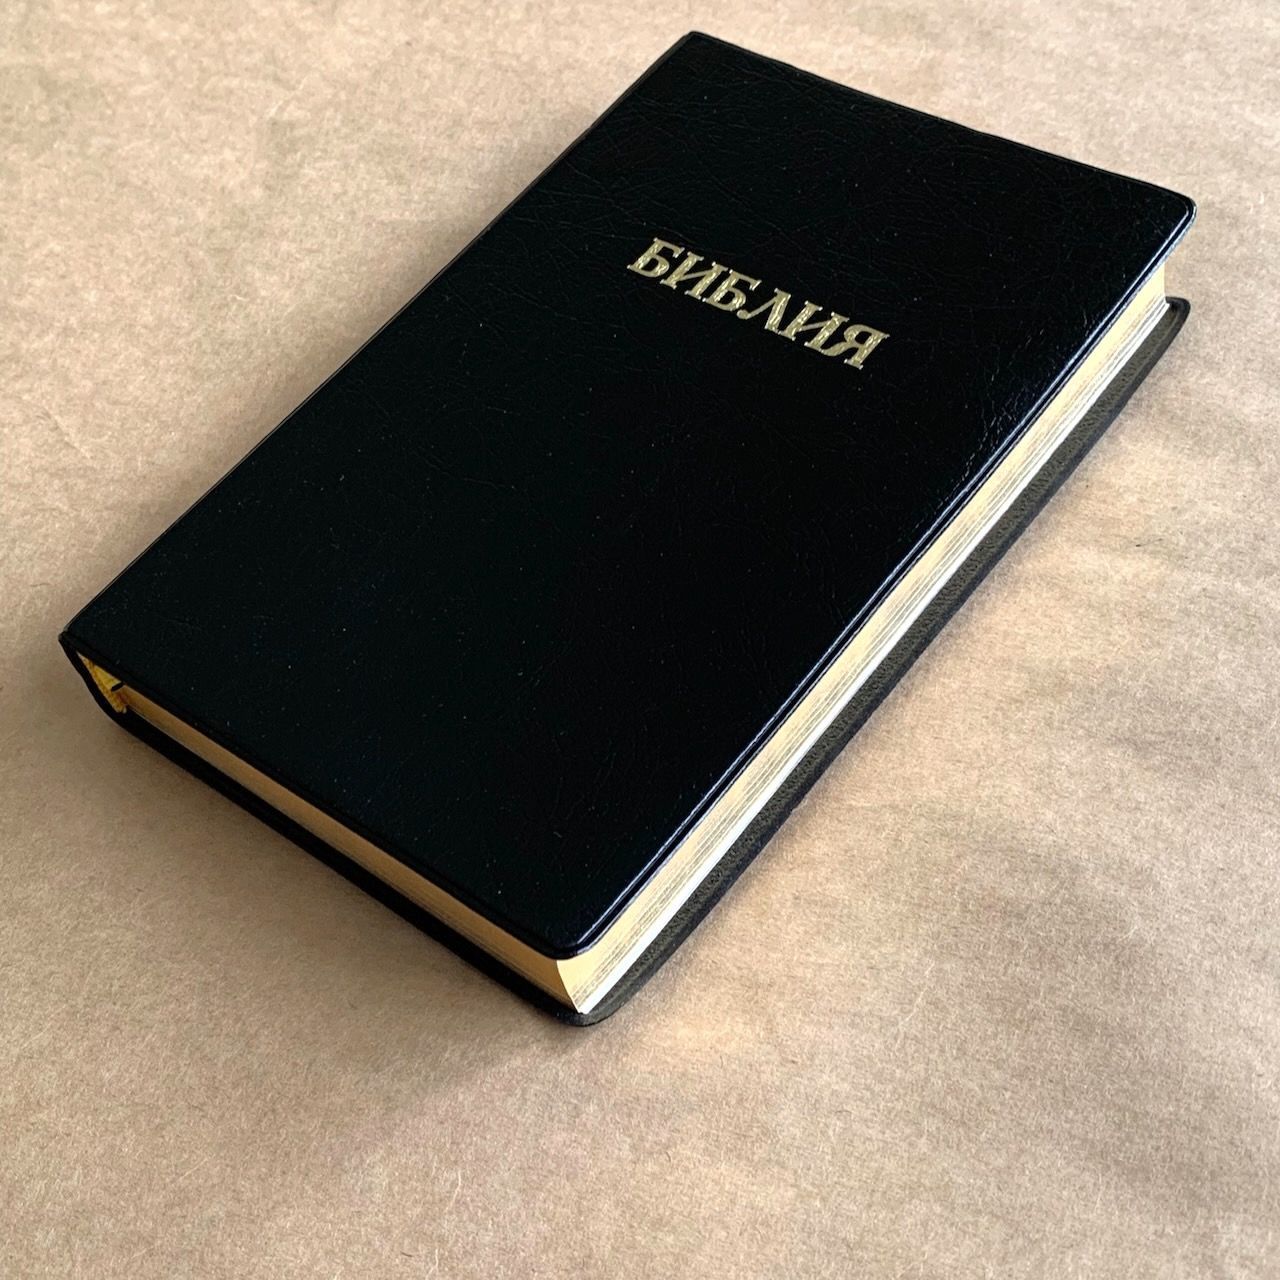 Библия 048 код E3 надпись "библия", переплет искусственной кожи, цвет черный металлик, формат 125*190 мм, золотой обрез, синодальный перевод, параллельные места по центру страницы, 2 закладки, шрифт 10-11 кегель, цветные карты